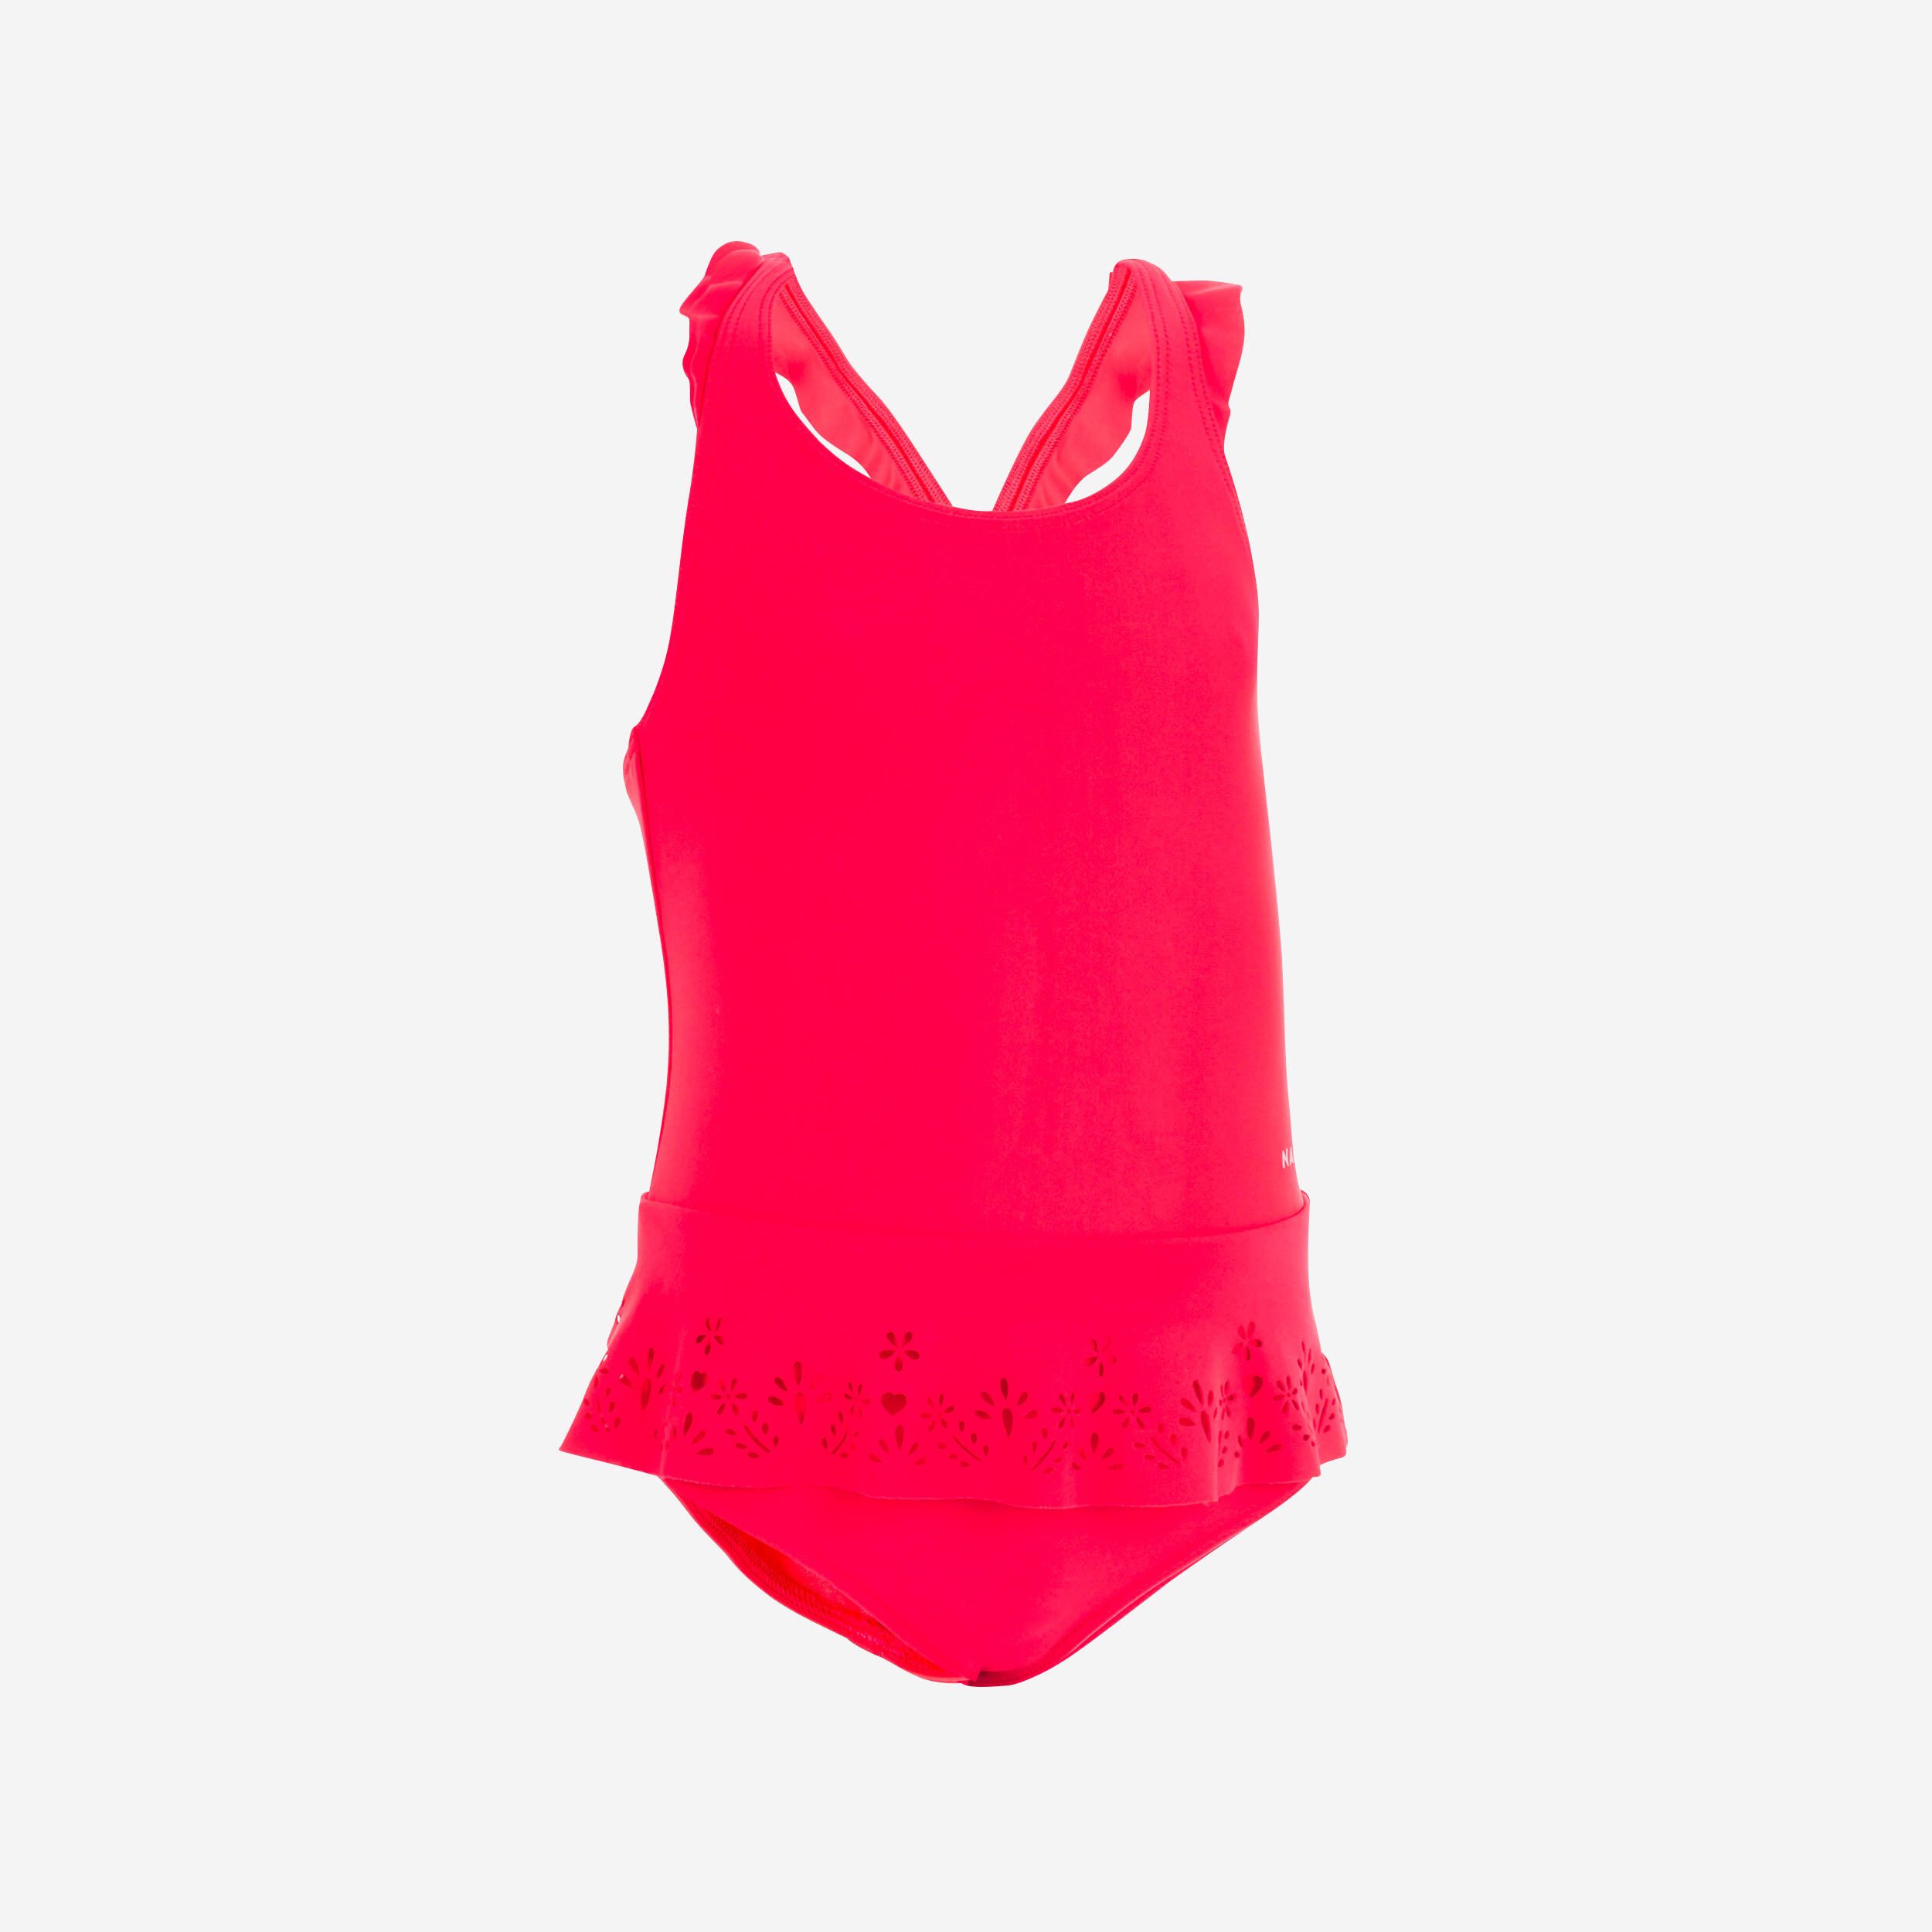 NABAIJI Baby Girls' 1-Piece Miniskirt Swimsuit - Red